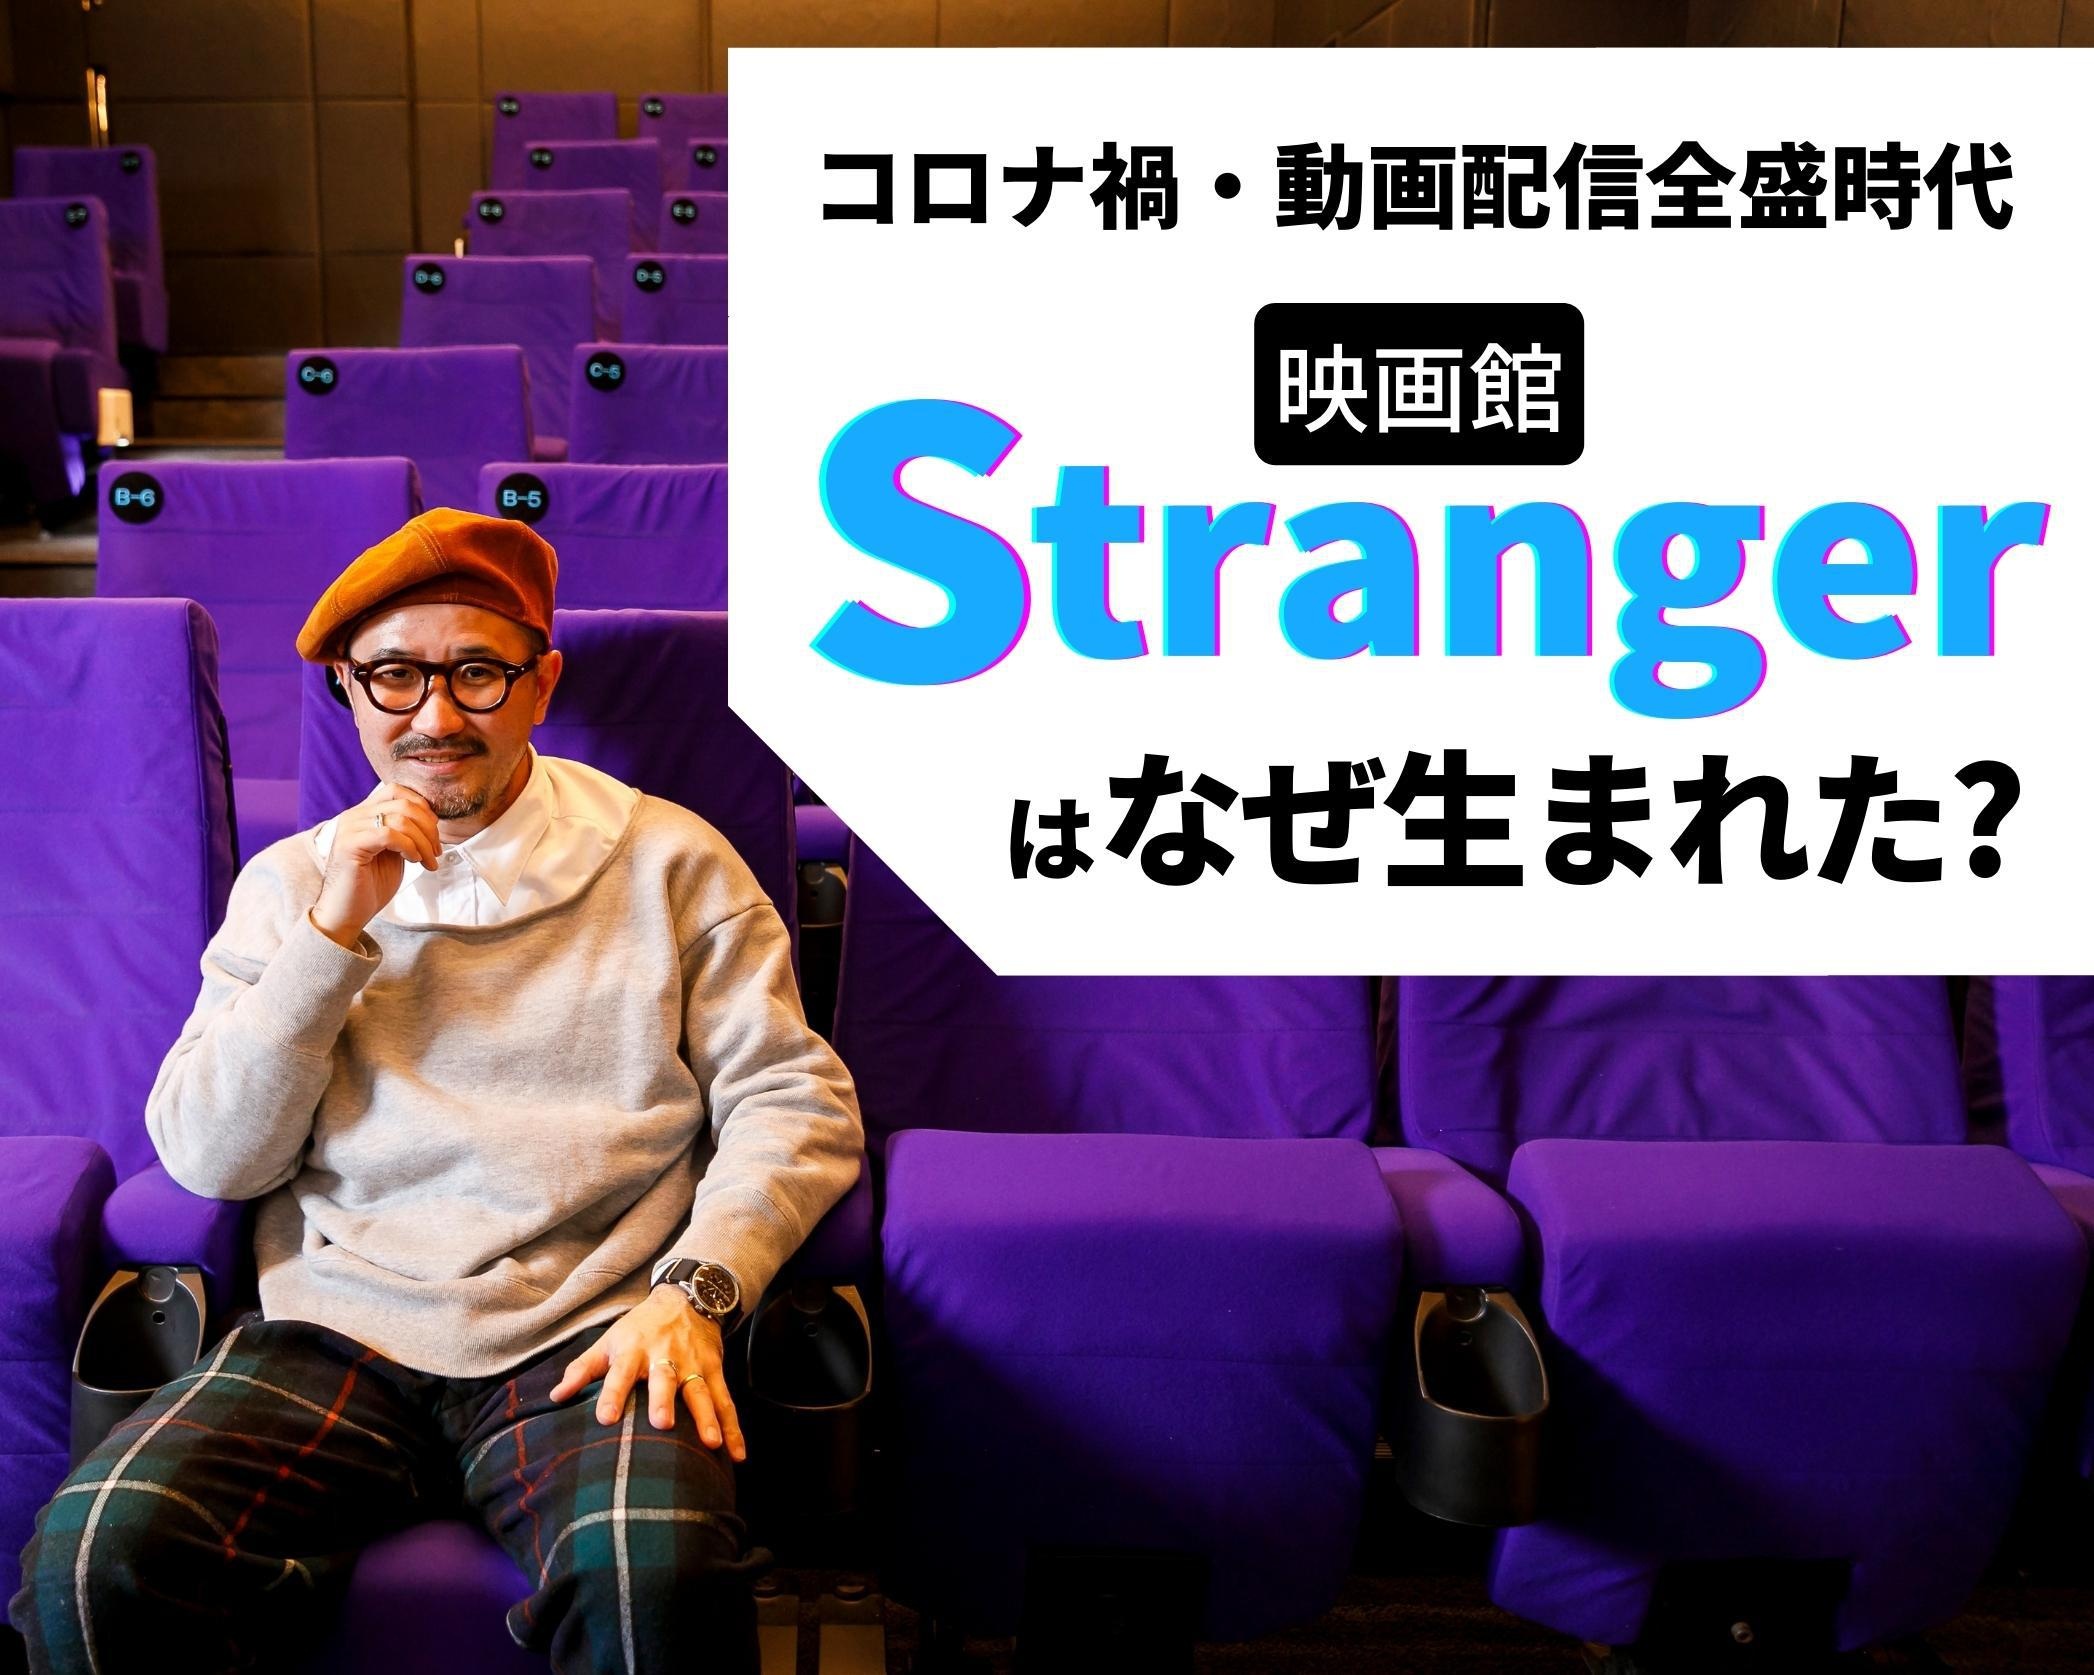 映画館「Stranger」チーフ・ディレクターの岡村忠征氏にインタビュー